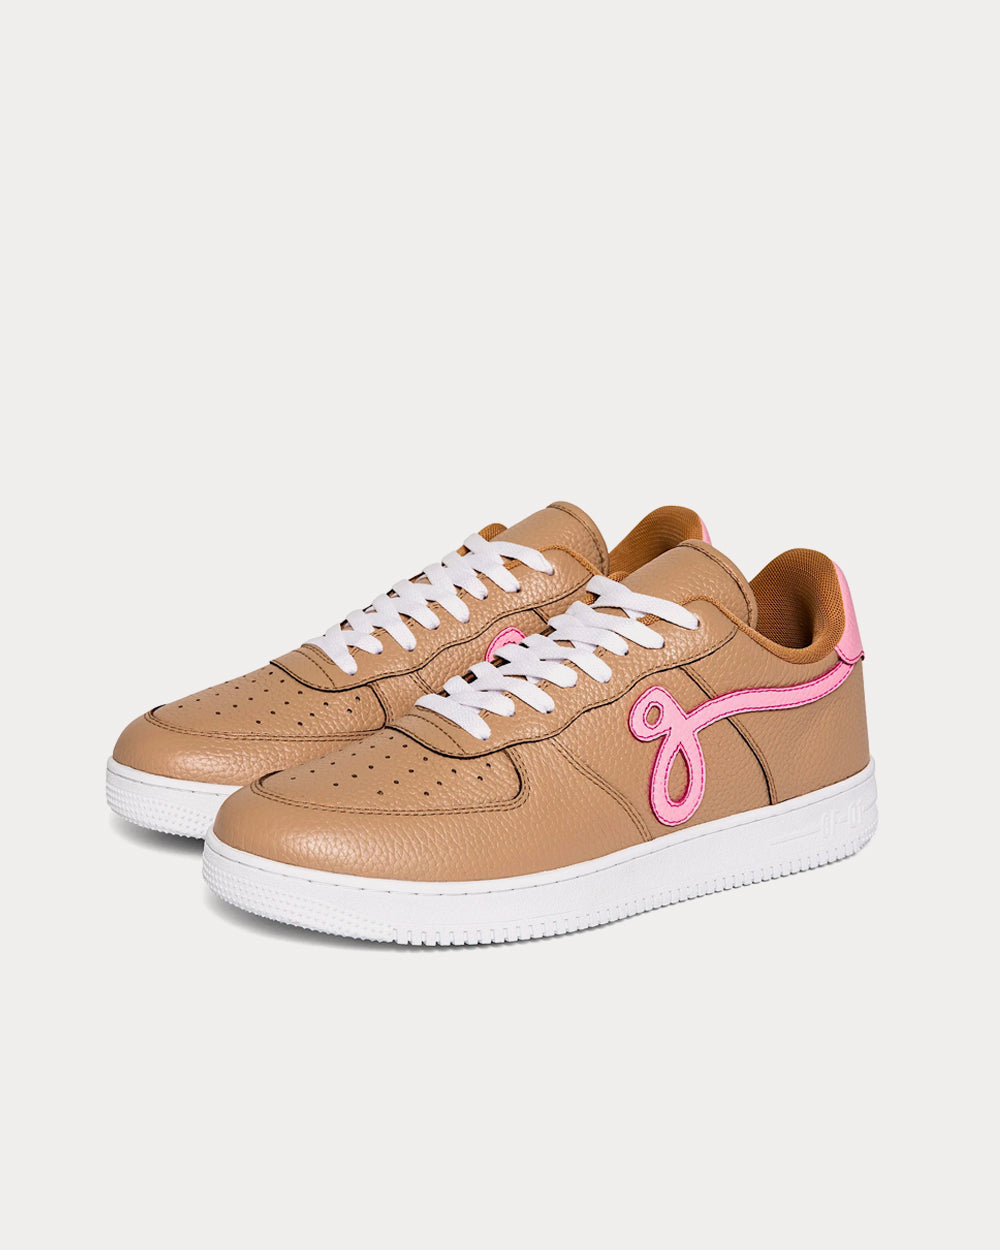 John Geiger - GF-01 'Linen' Tan / Pink Low Top Sneakers